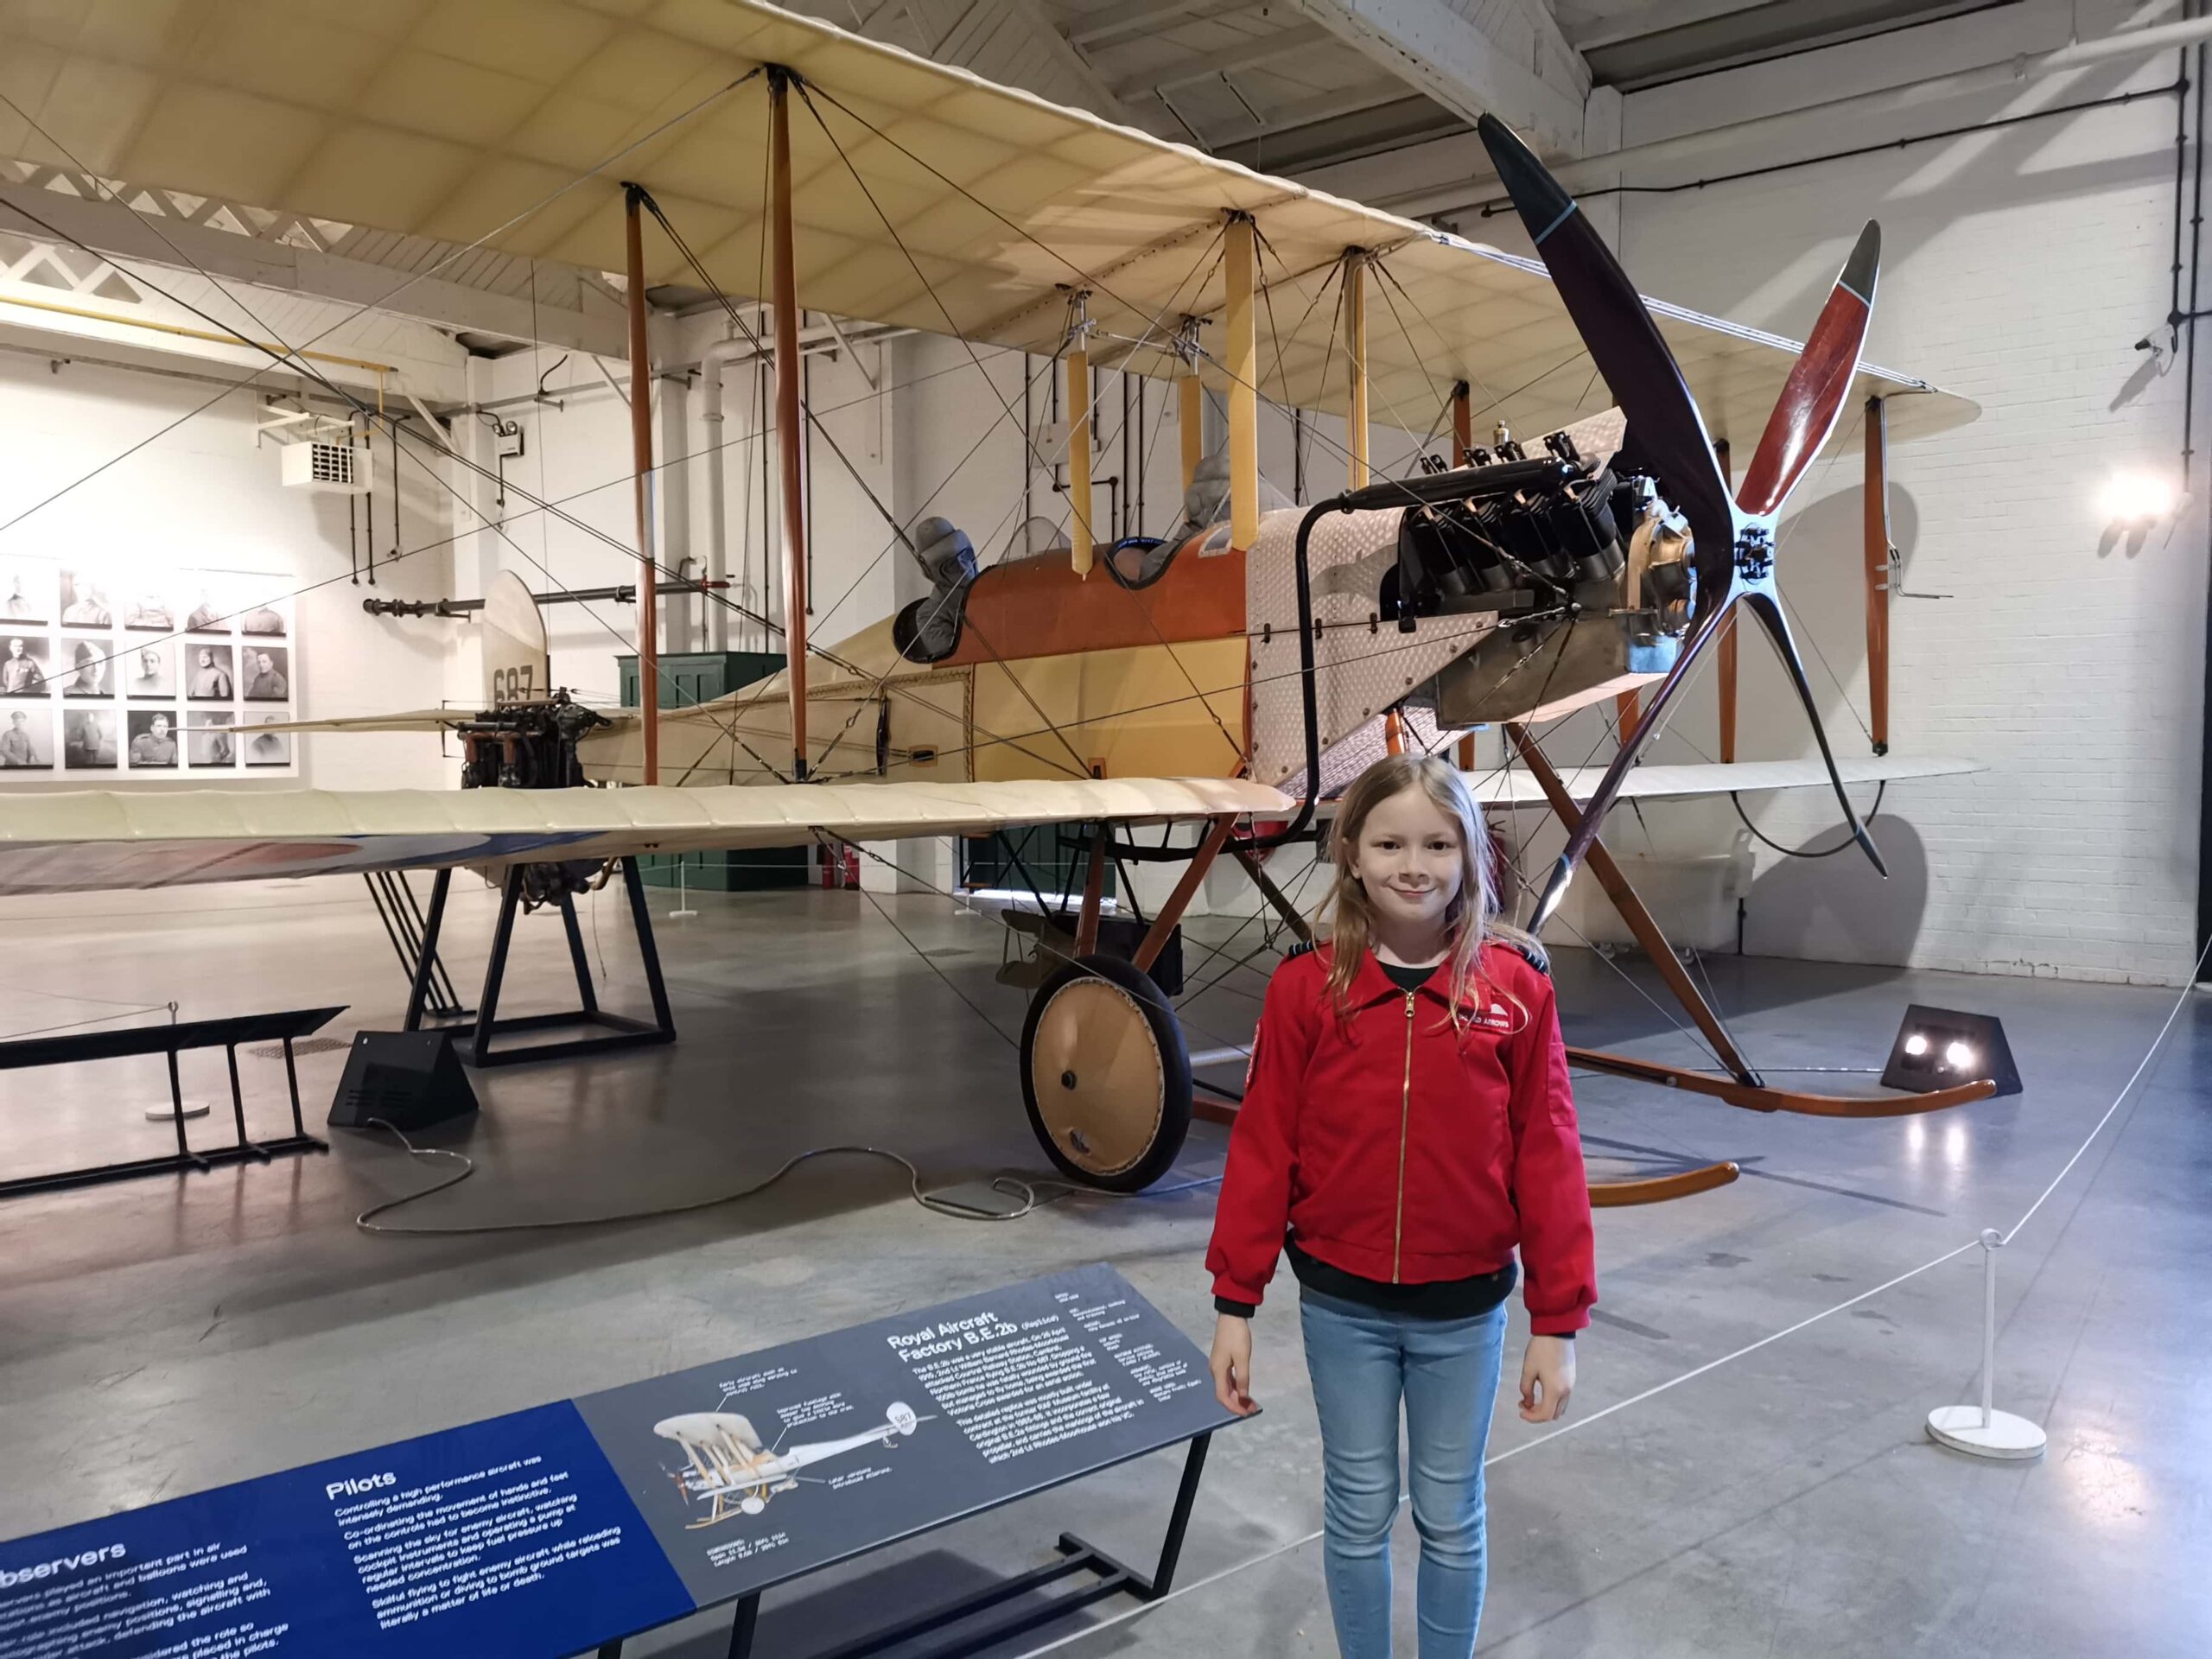 Royal Air Force museum London